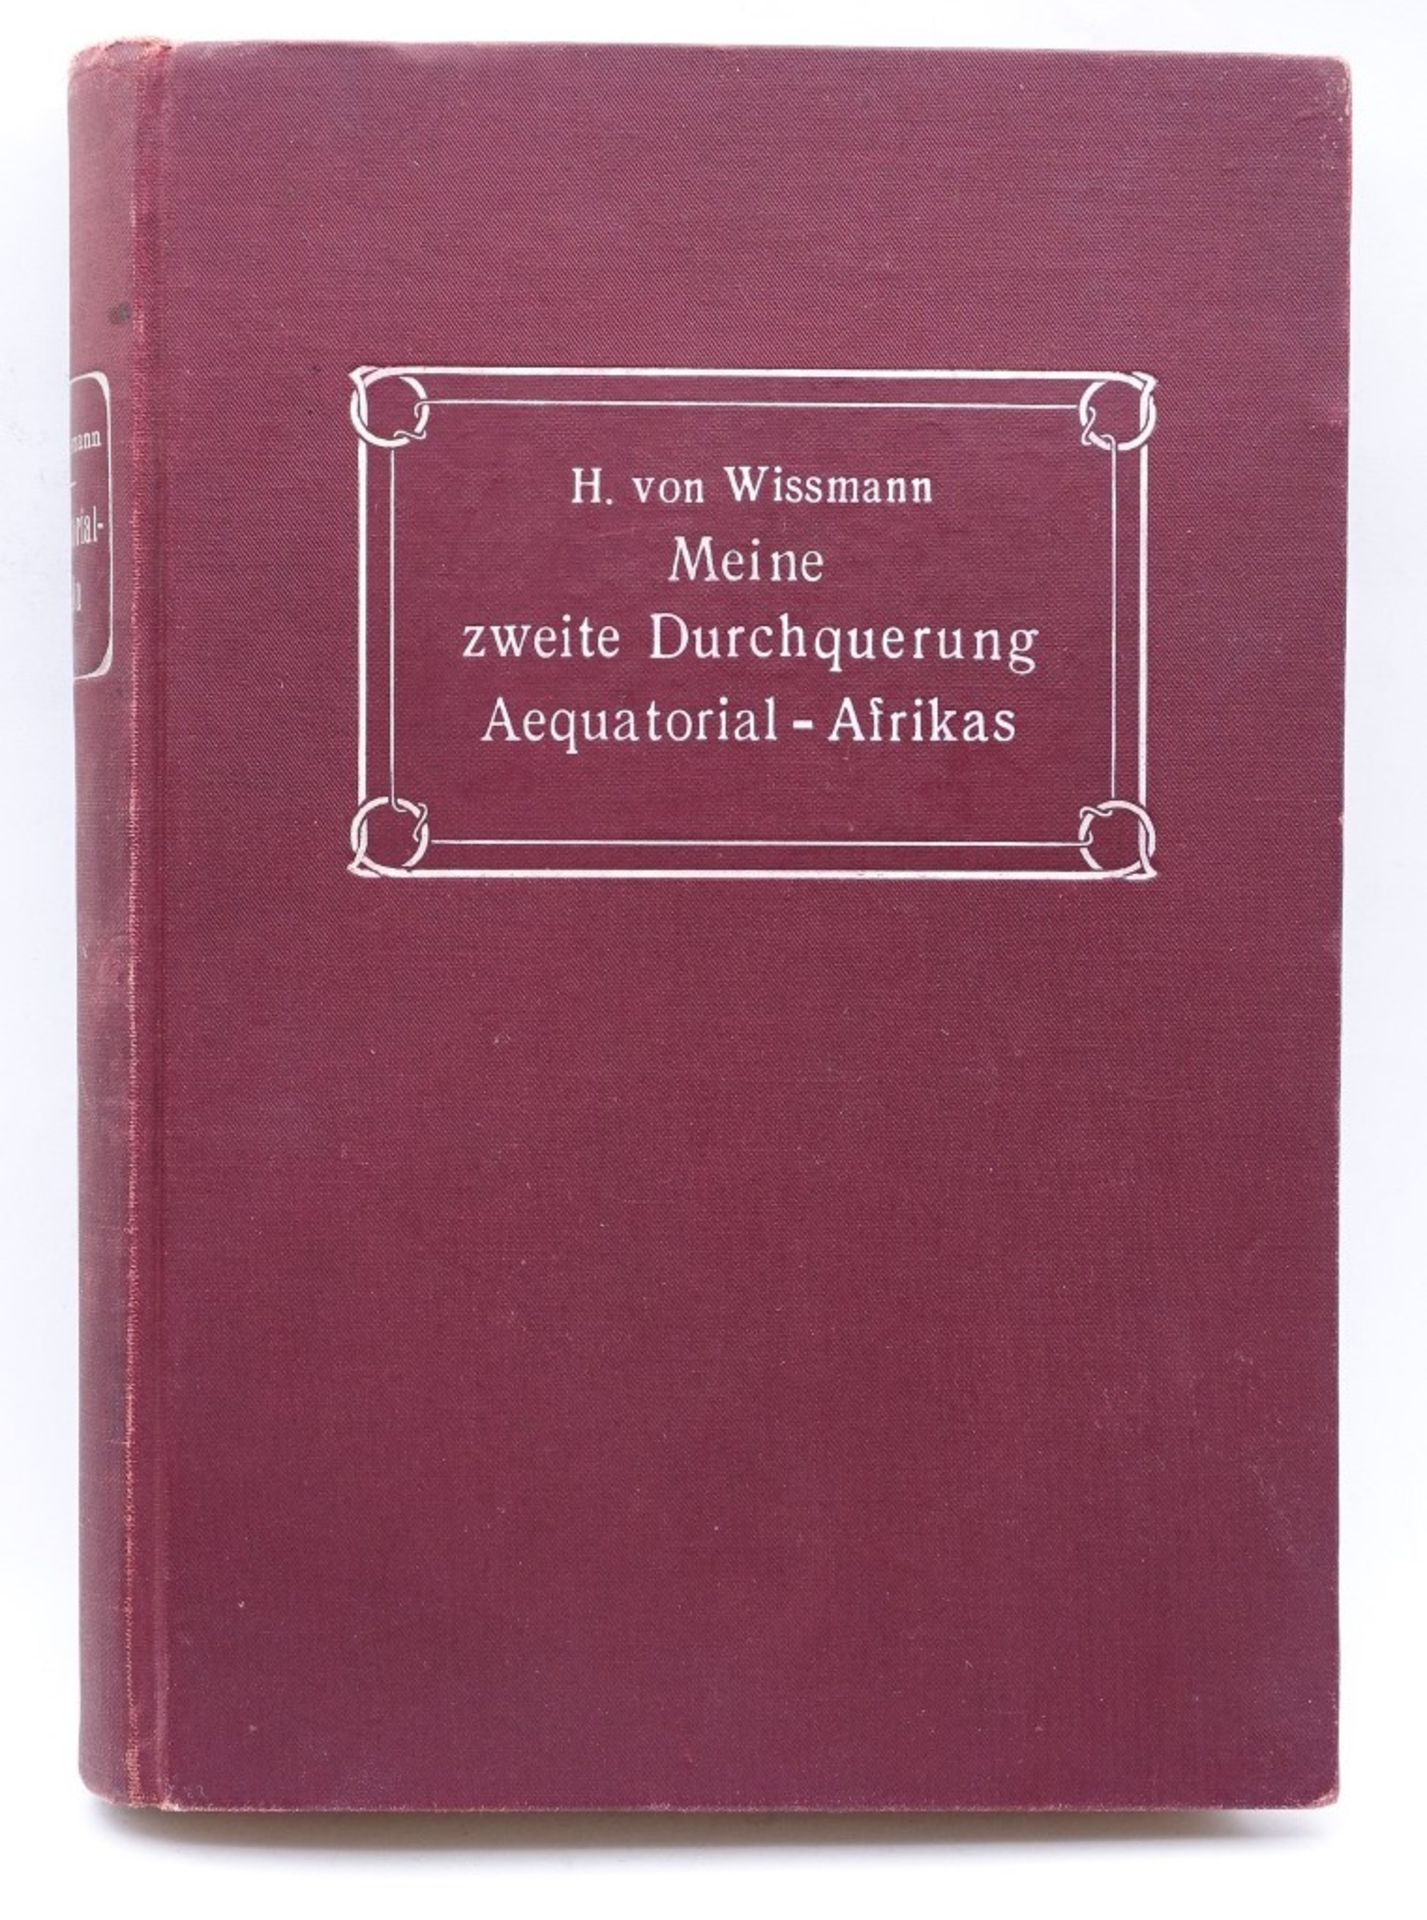 Meine zweite Durchquerung Aequatorial-Afrikas,H.von Wissmann,